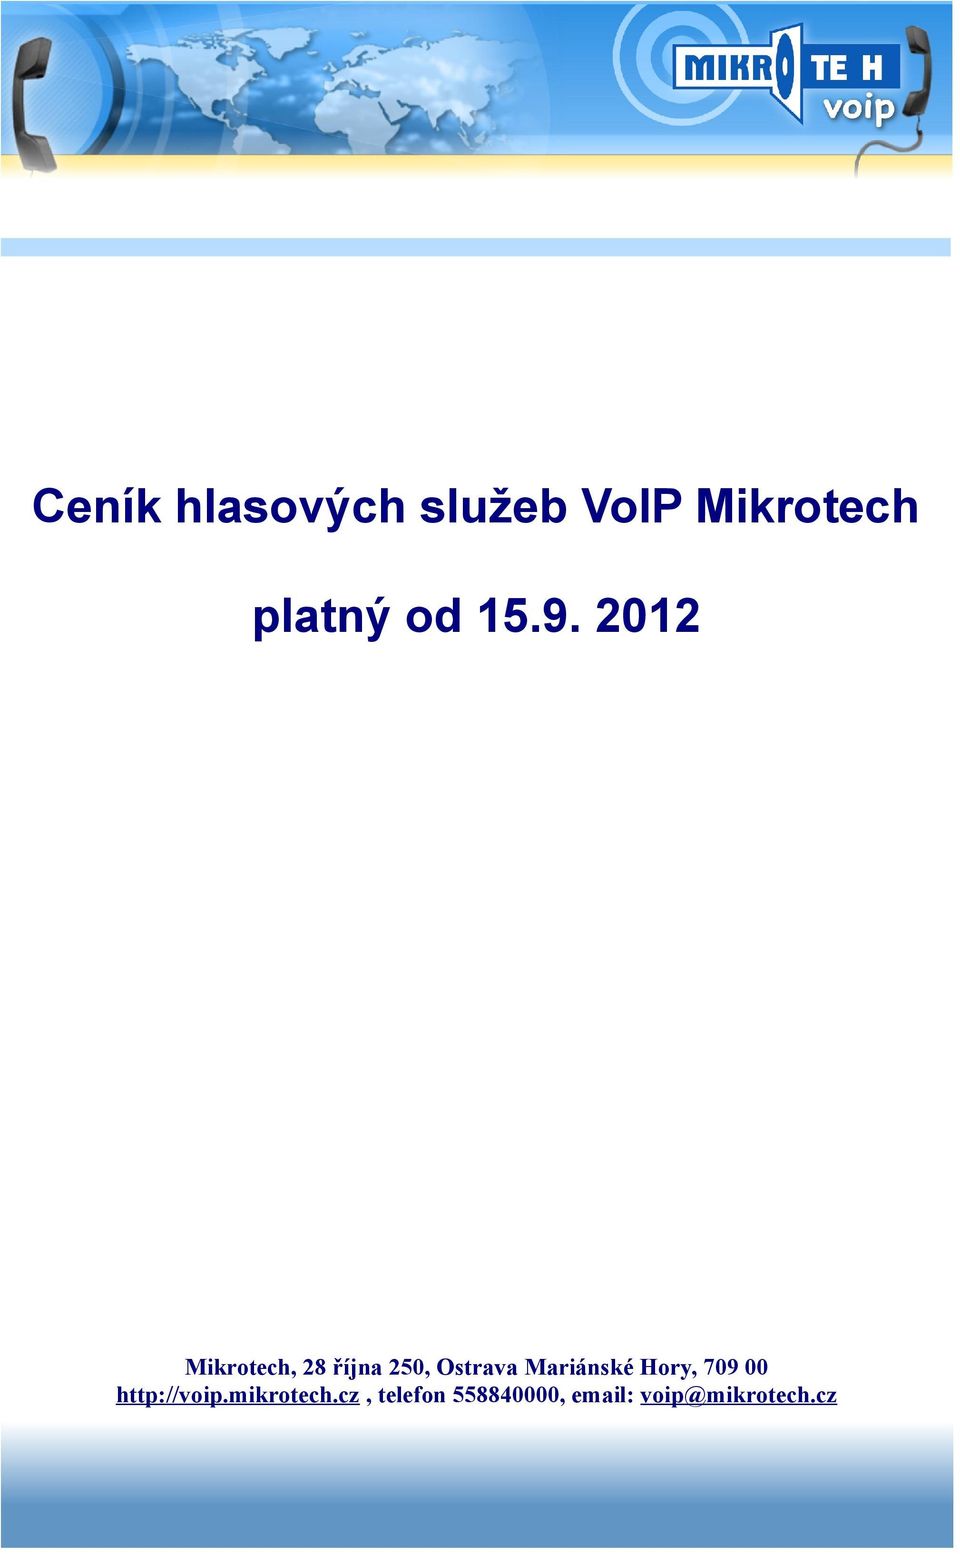 2012 Mikrotech, 28 října 250, Ostrava